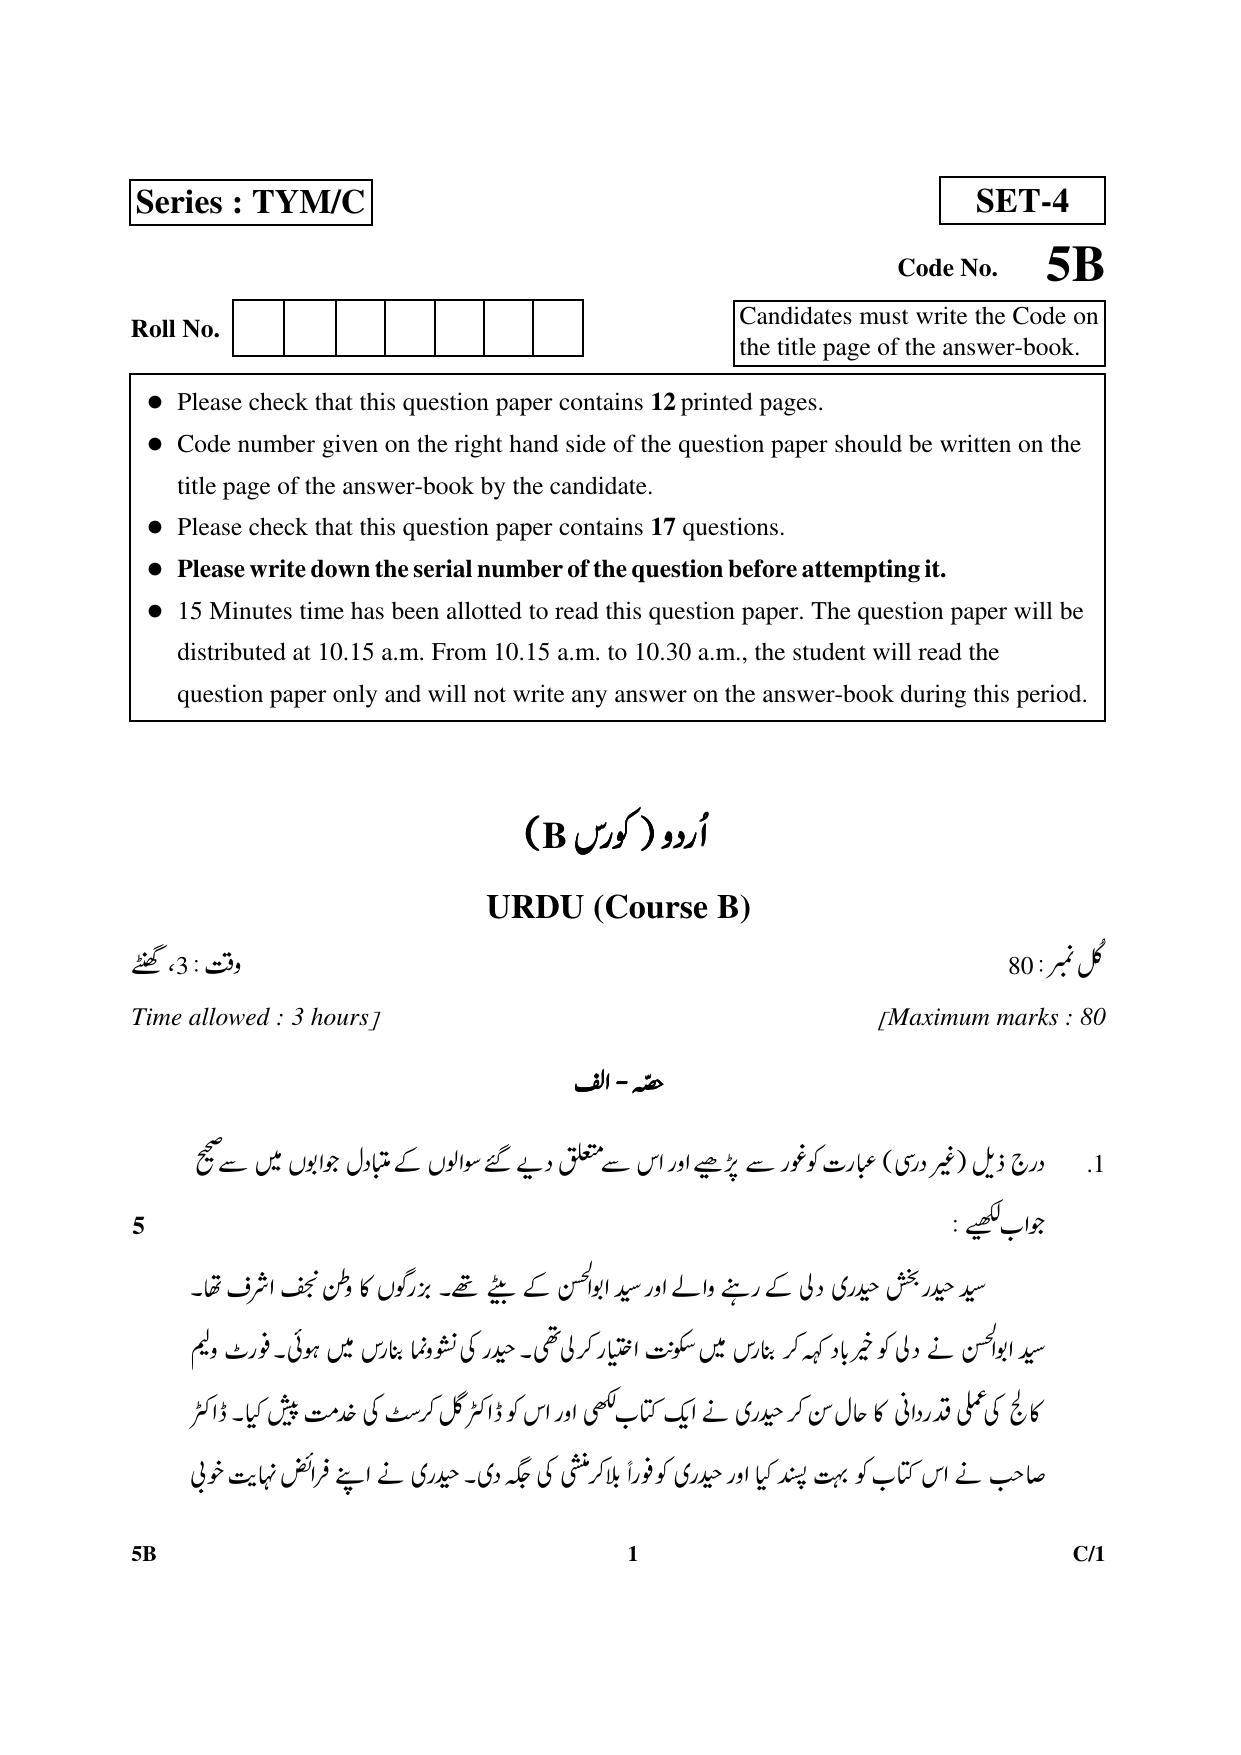 CBSE Class 10 5B Urdu (Course B) 2018 Compartment Question Paper - Page 1